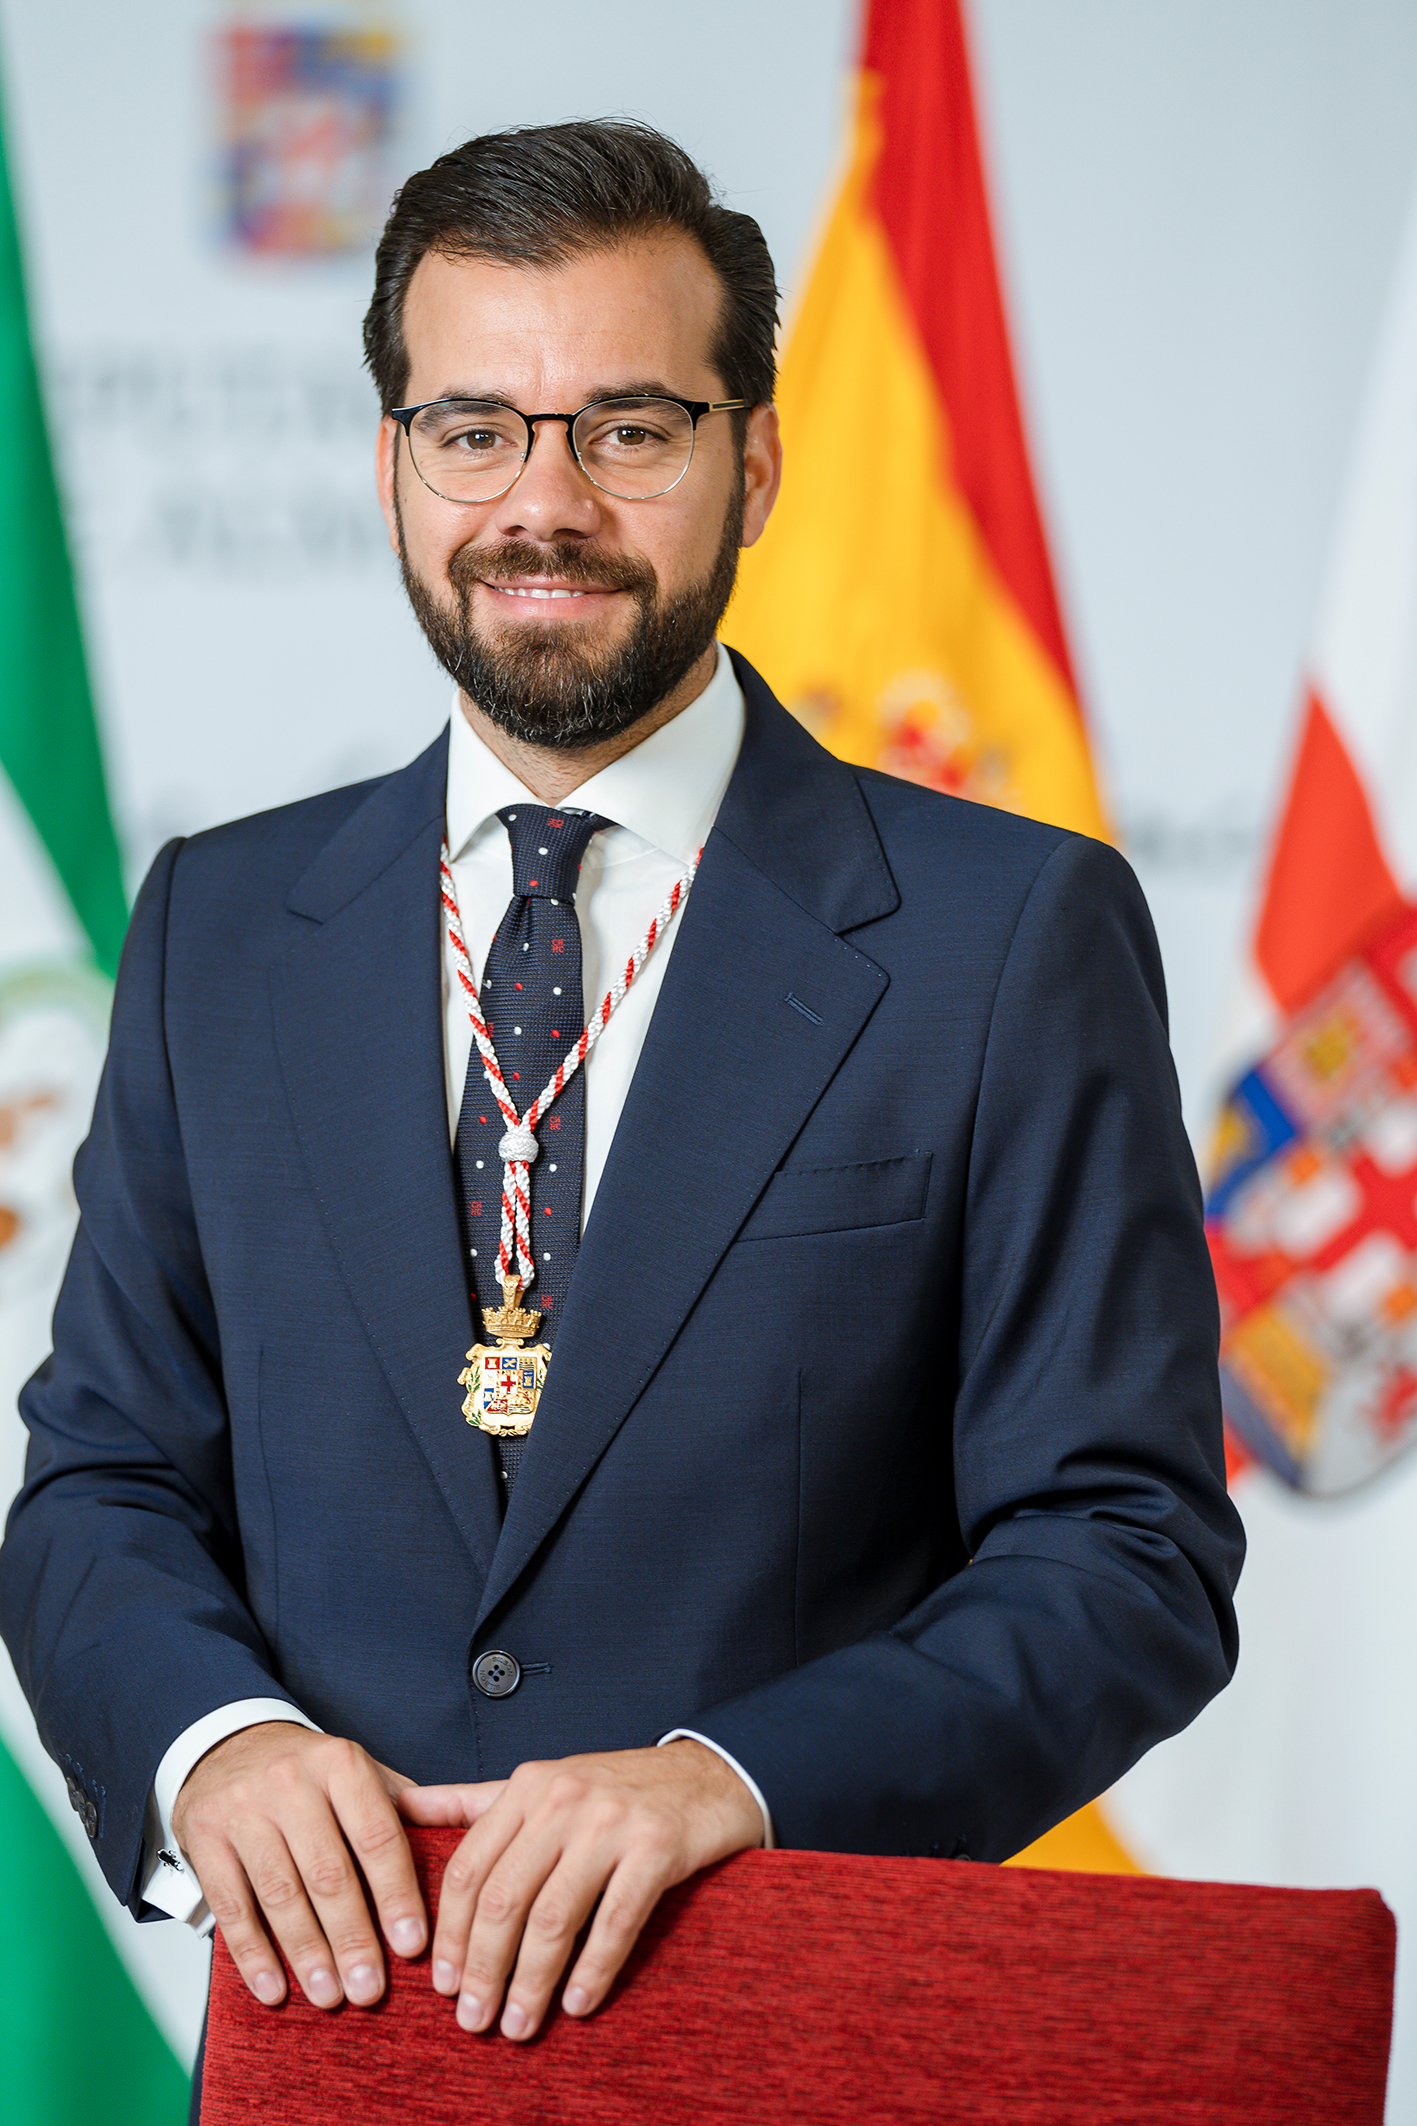 Álvaro Izquierdo Álvarez